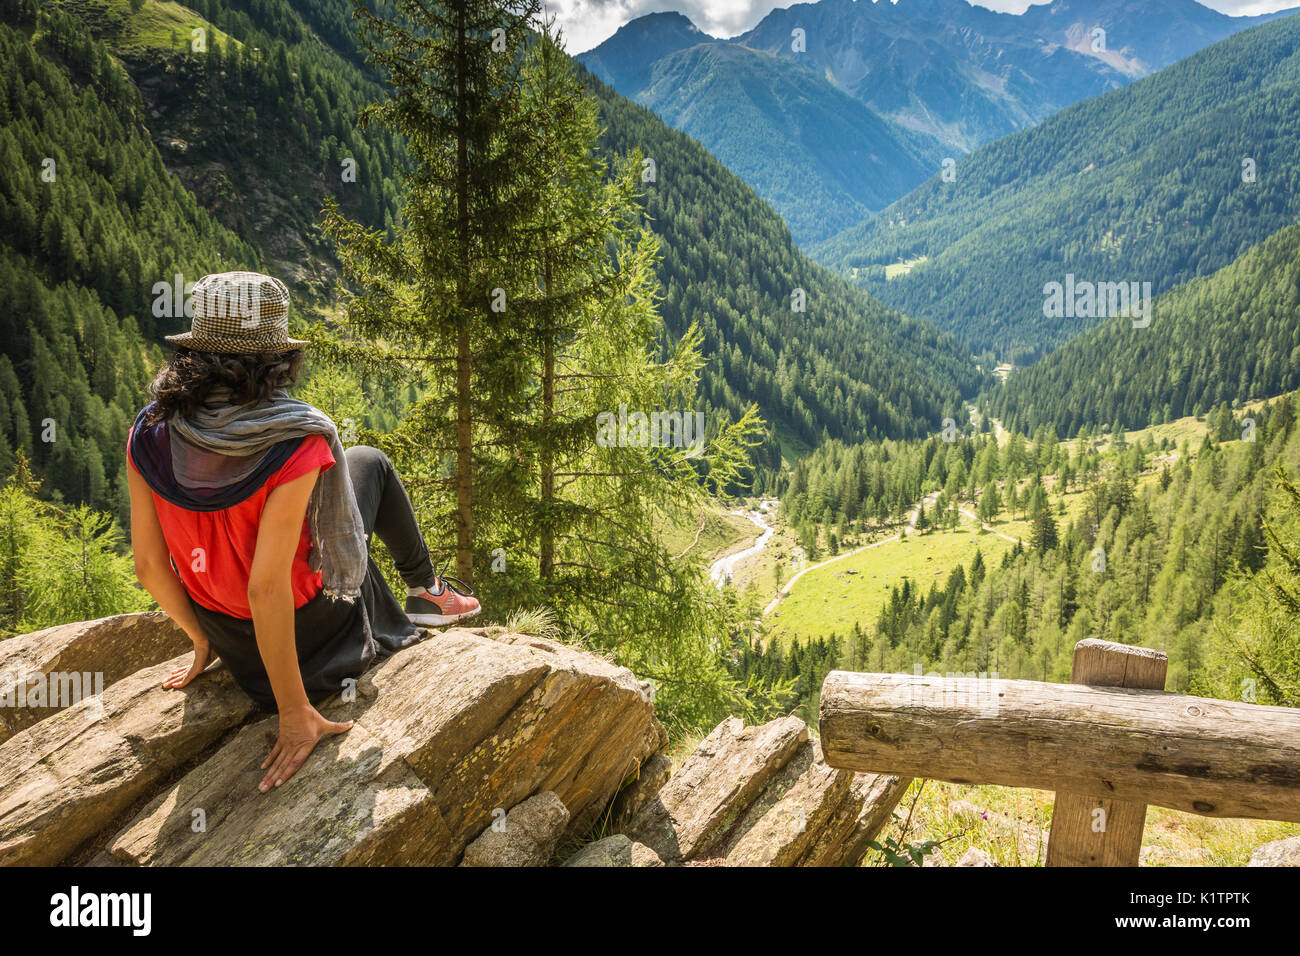 Reisende junge Dame steht auf dem Gipfel des Berges und enjoyng Blick in das Tal. Rabbi Tal, Trentino Alto Adige, Italien Stockfoto